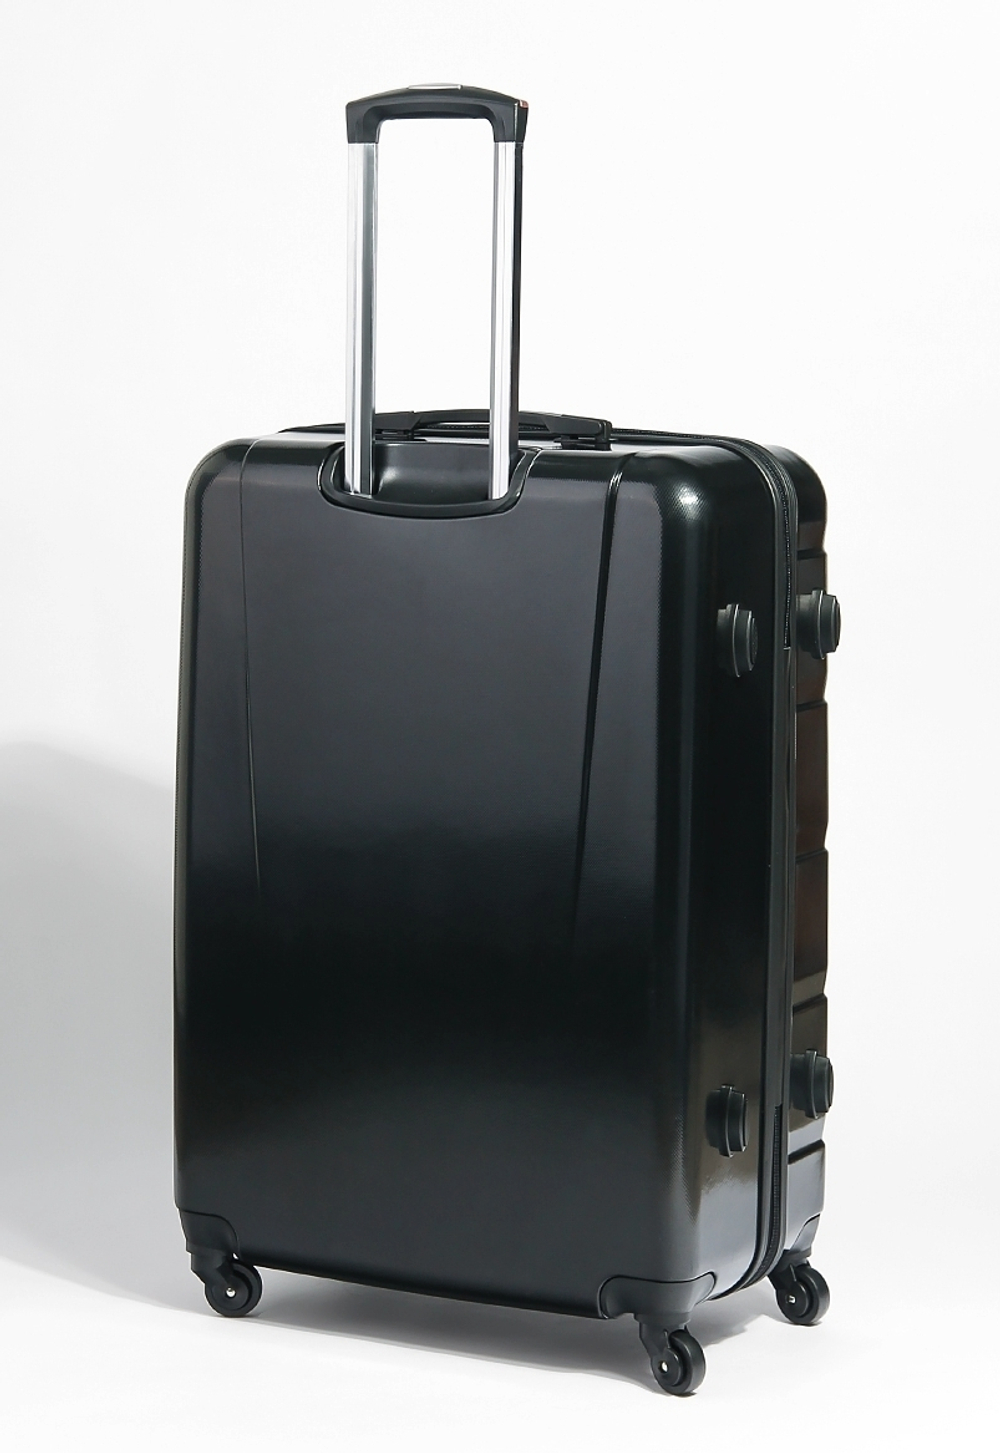 Самые легкие чемоданы: рейтинг моделей